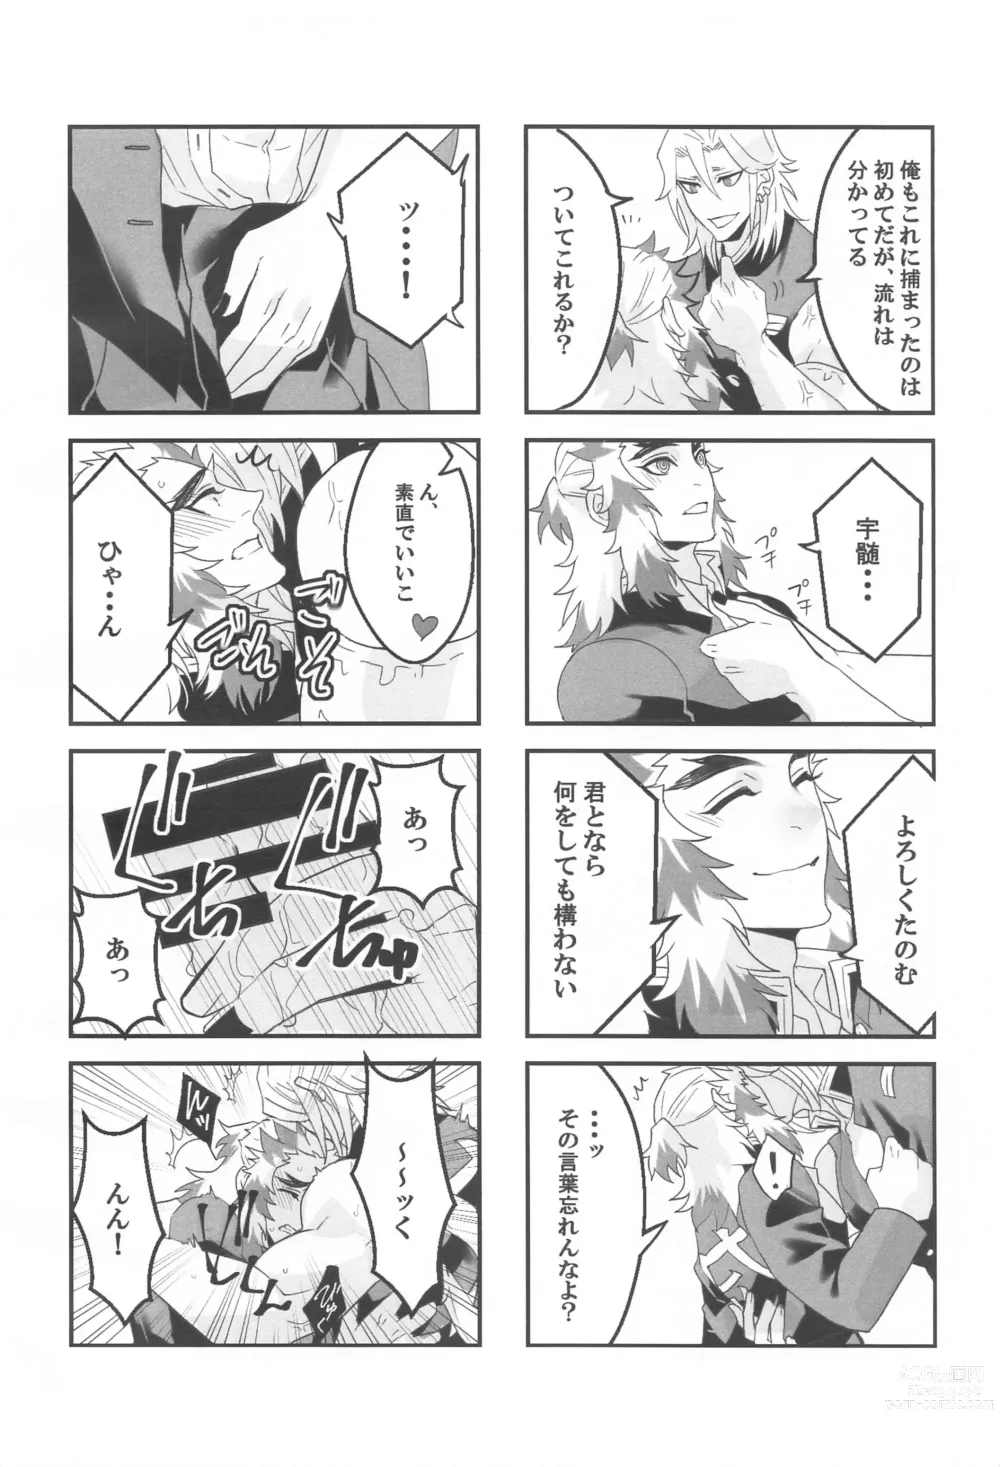 Page 7 of doujinshi ●● Shinai to Derarenai Heya